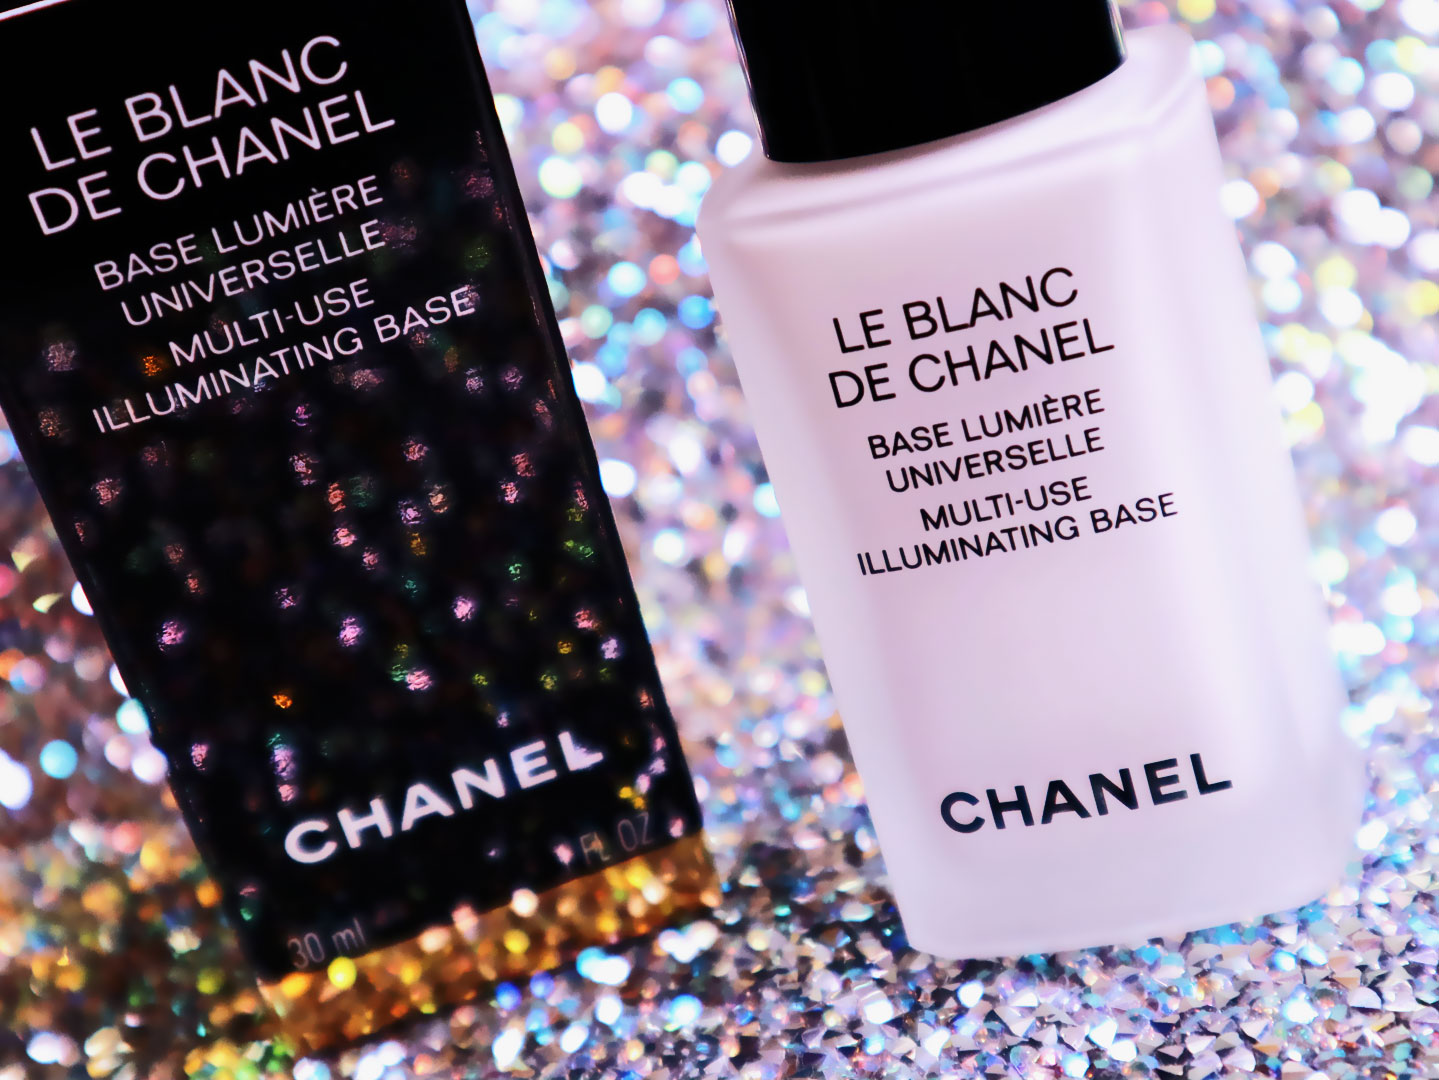 Le Blanc De CHANEL Multi-Use Illuminating Base Photo Of Joy Style Trends Media